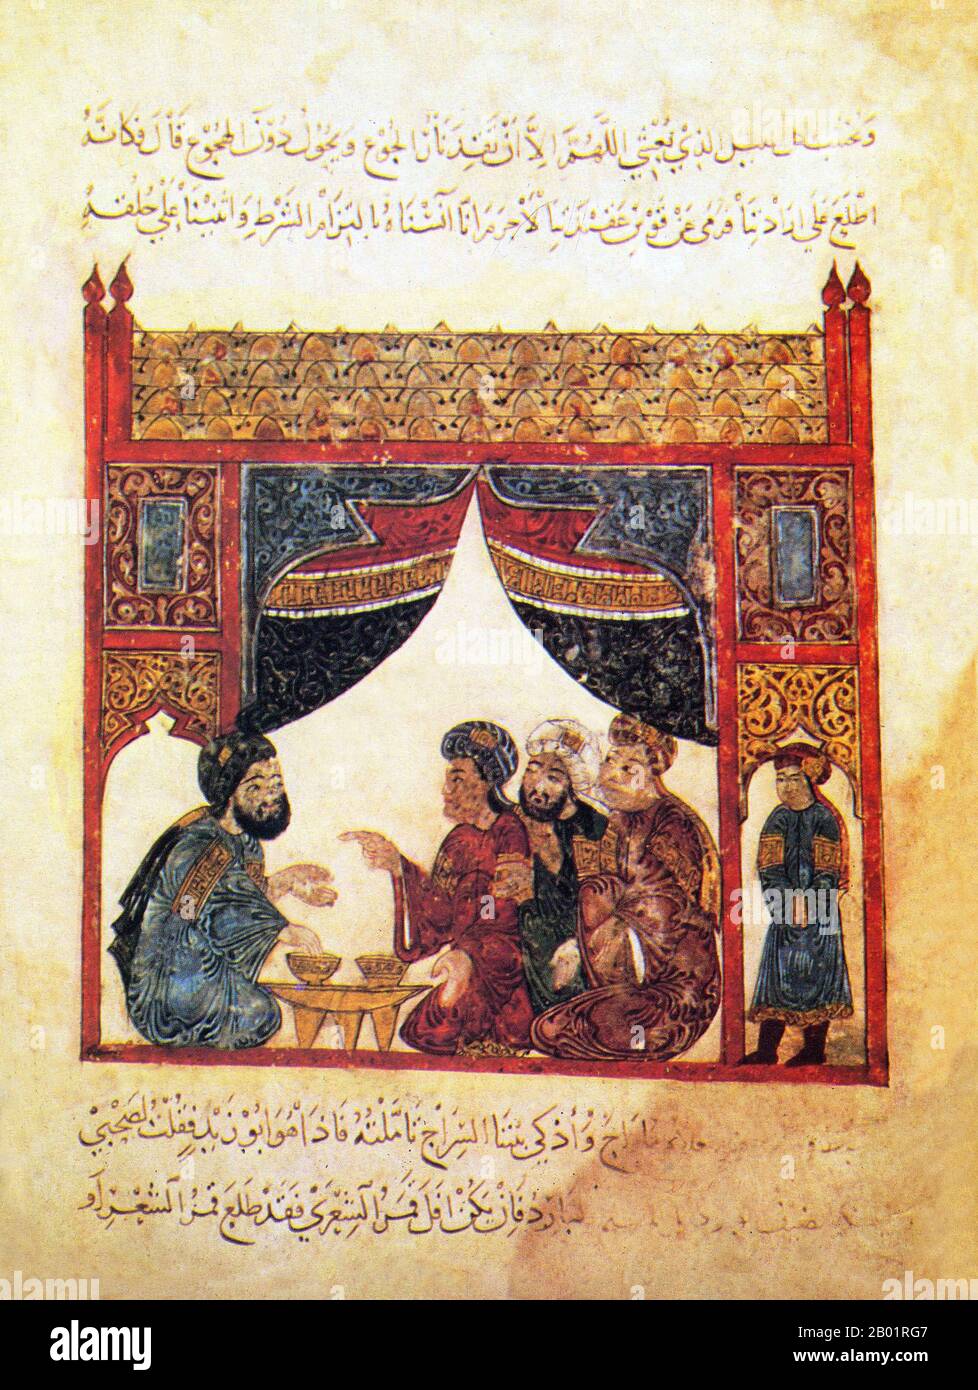 Iraq: Quattro uomini in discussione mentre un servo guarda. Dipinto in miniatura di Yahya ibn Mahmud al-Wasiti, 1237. Yahyâ ibn Mahmûd al-Wâsitî è stato un artista arabo islamico del XIII secolo. Al-Wasiti è nato a Wasit, nel sud dell'Iraq. Era noto per le sue illustrazioni del Maqam di al-Hariri. I Maqāma (letteralmente "assemblee") sono un genere letterario arabo (originariamente) di prosa rimata con intervalli di poesia in cui la stravaganza retorica è evidente. Si dice che l'autore del X secolo Badī' al-Zaman al-Hamadhāni abbia inventato la forma, che fu estesa da al-Hariri di Bassora nel secolo successivo. Foto Stock